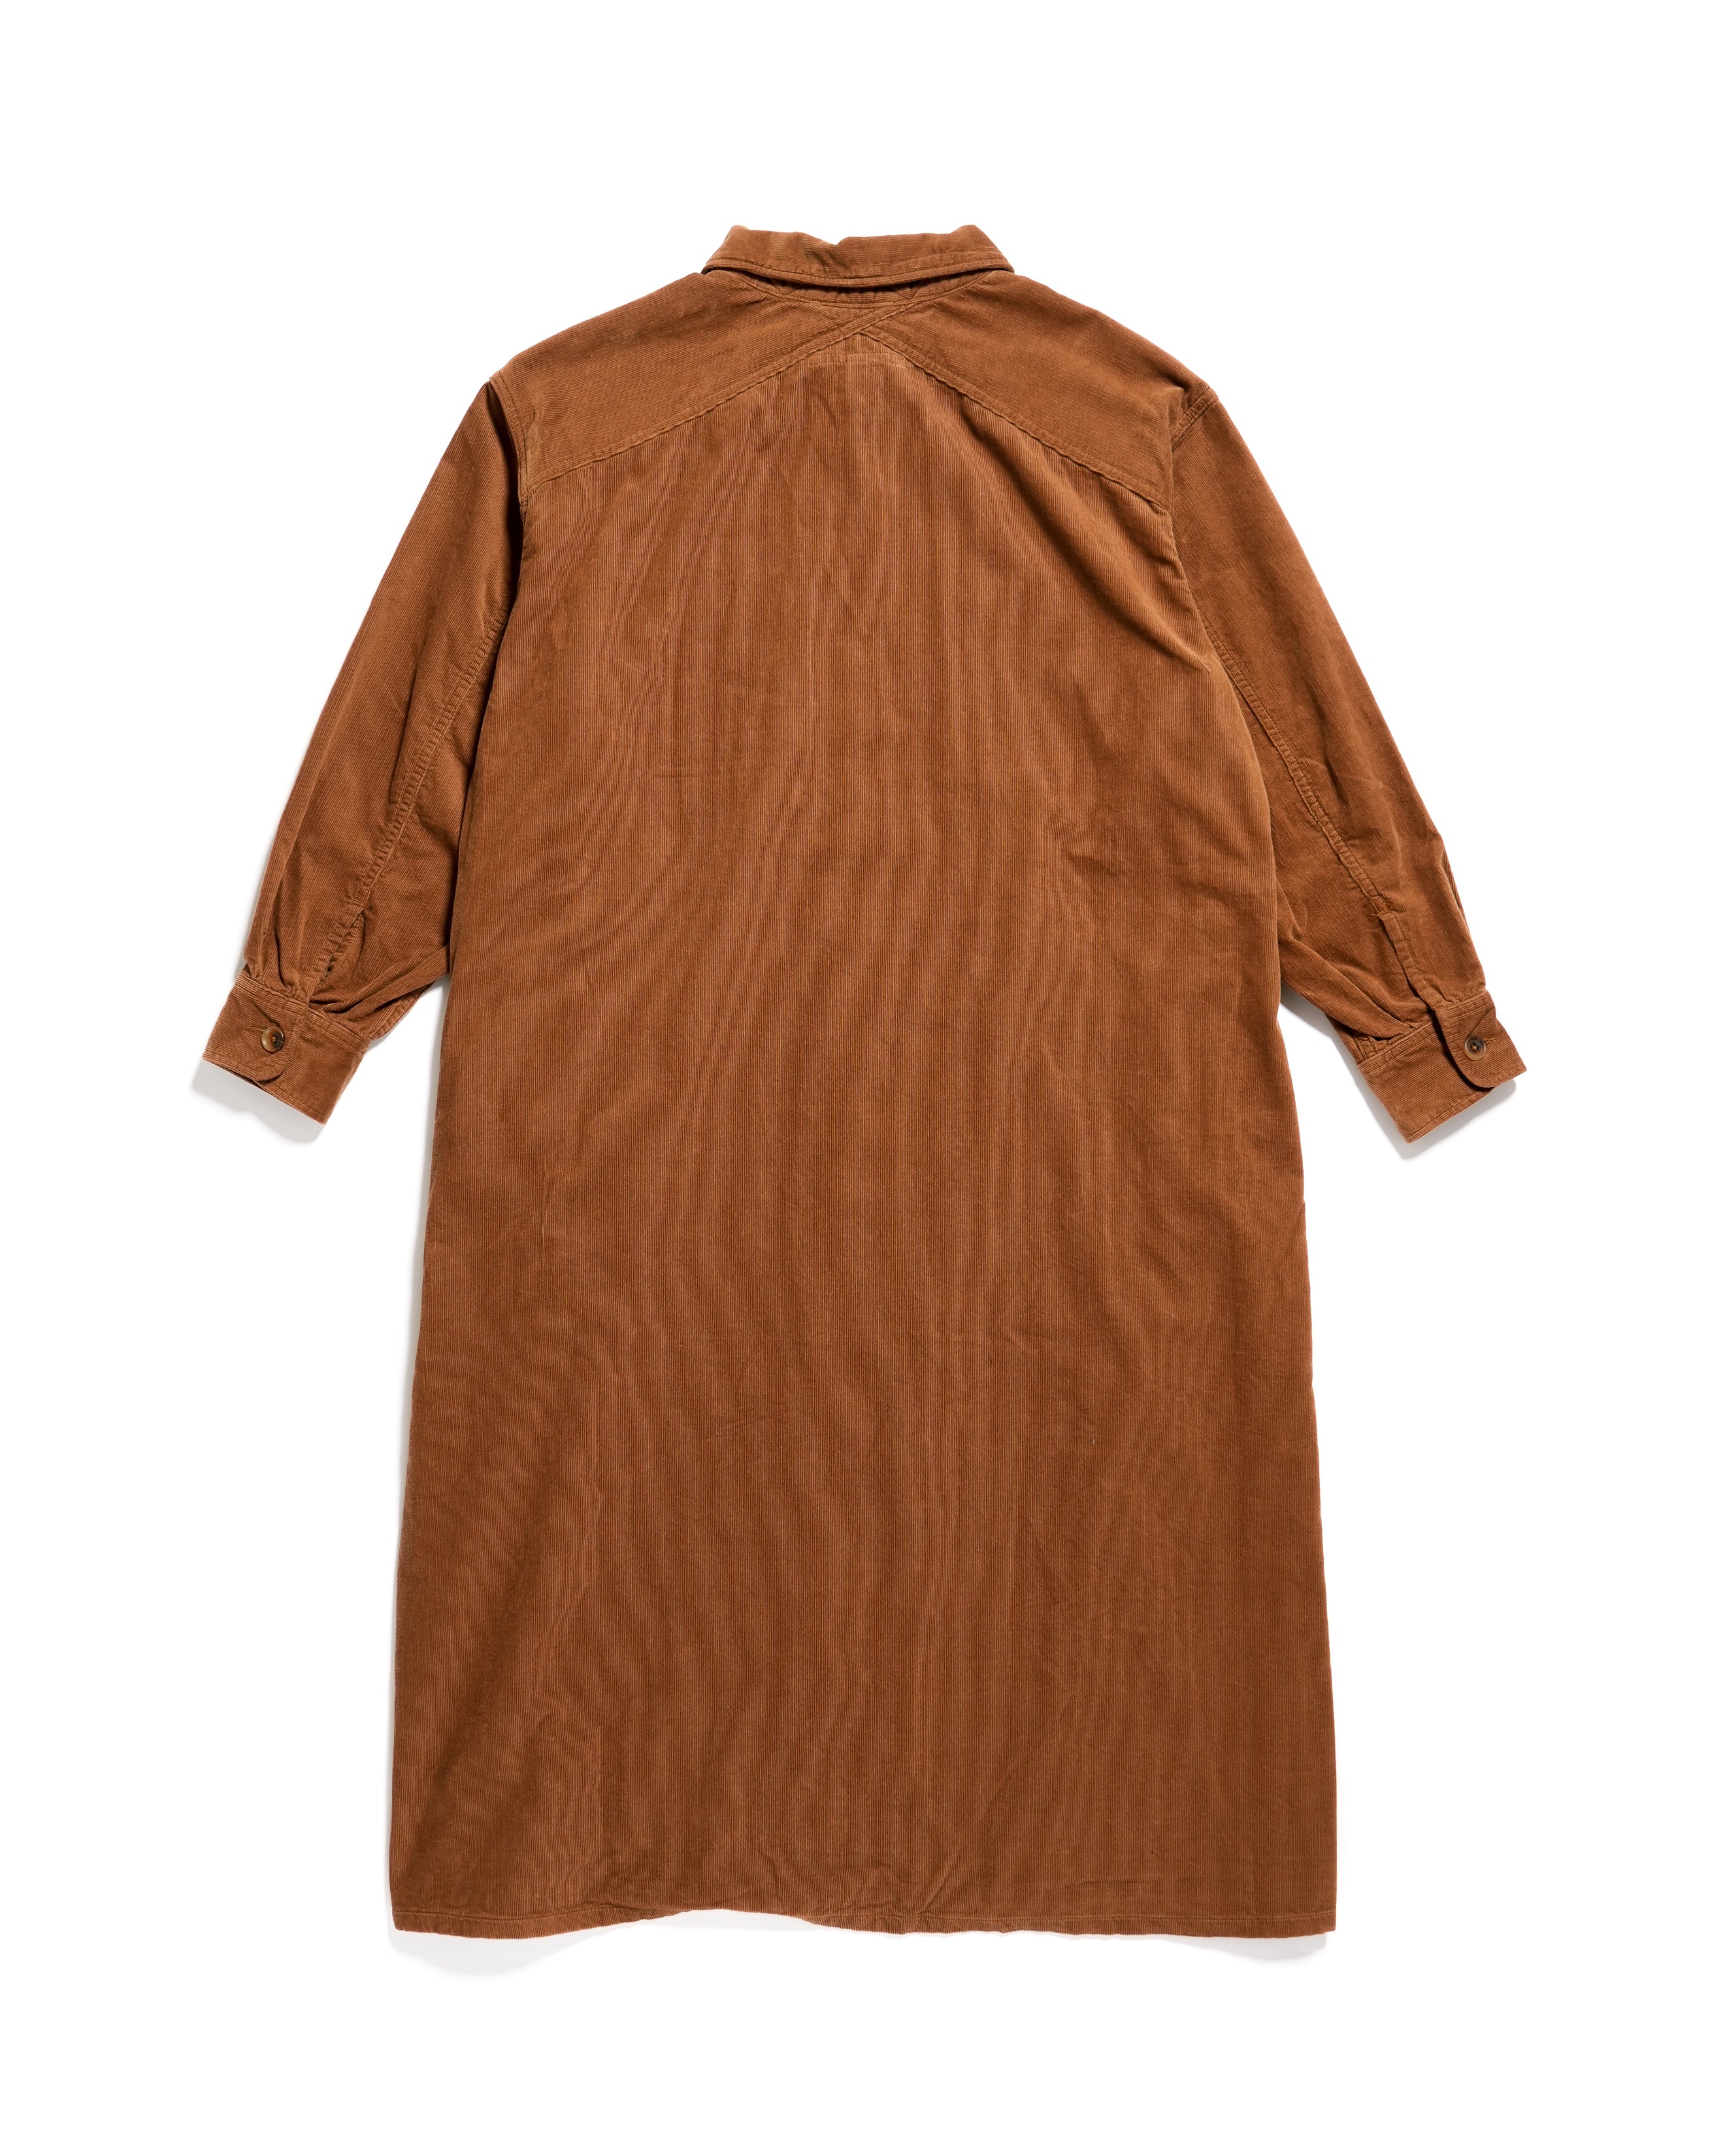 M51 Dress - Brown Cotton 21W Corduroy